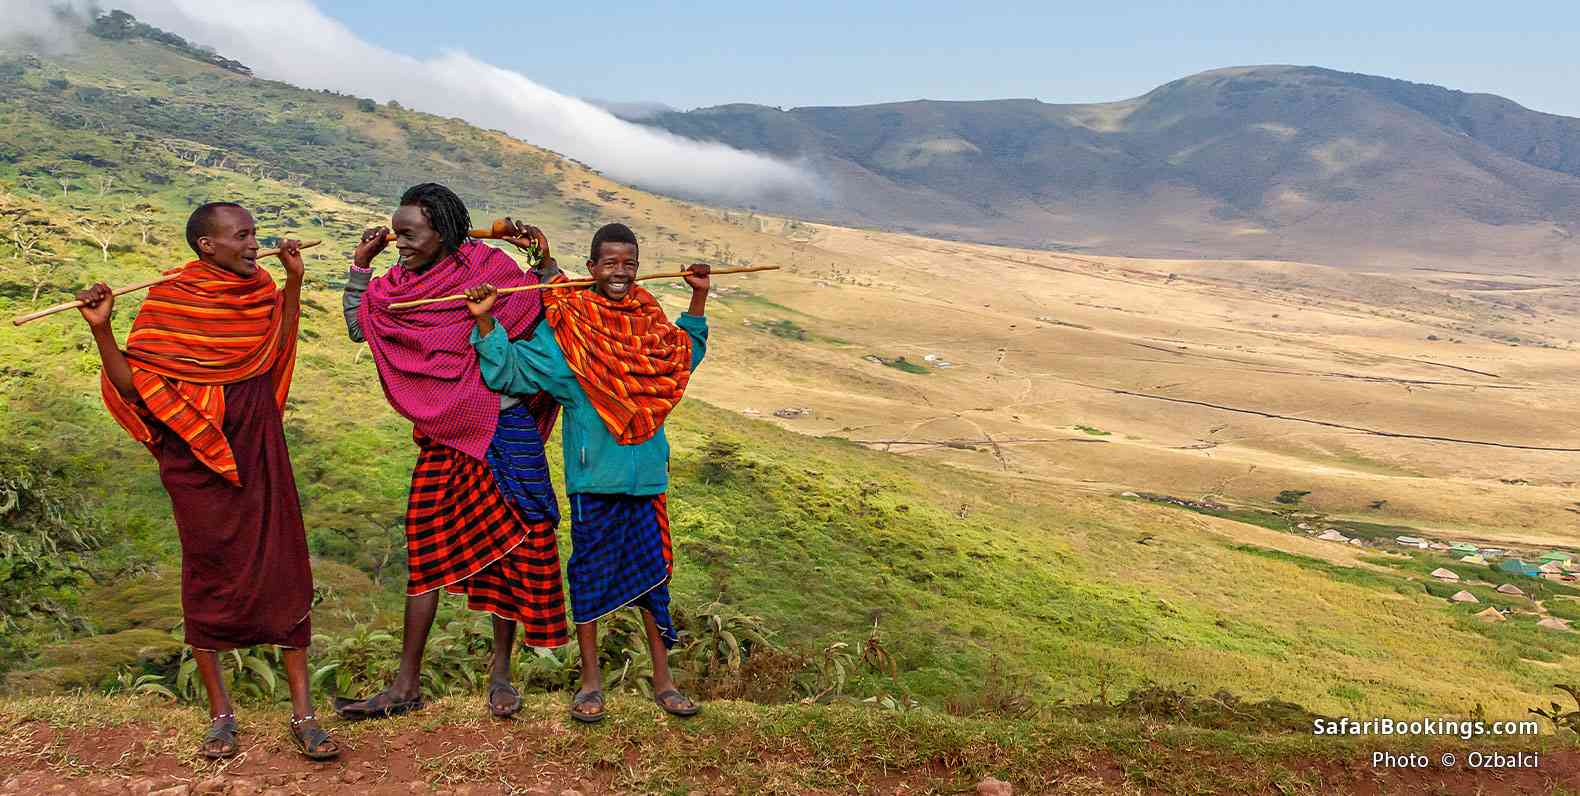 Maasai herders